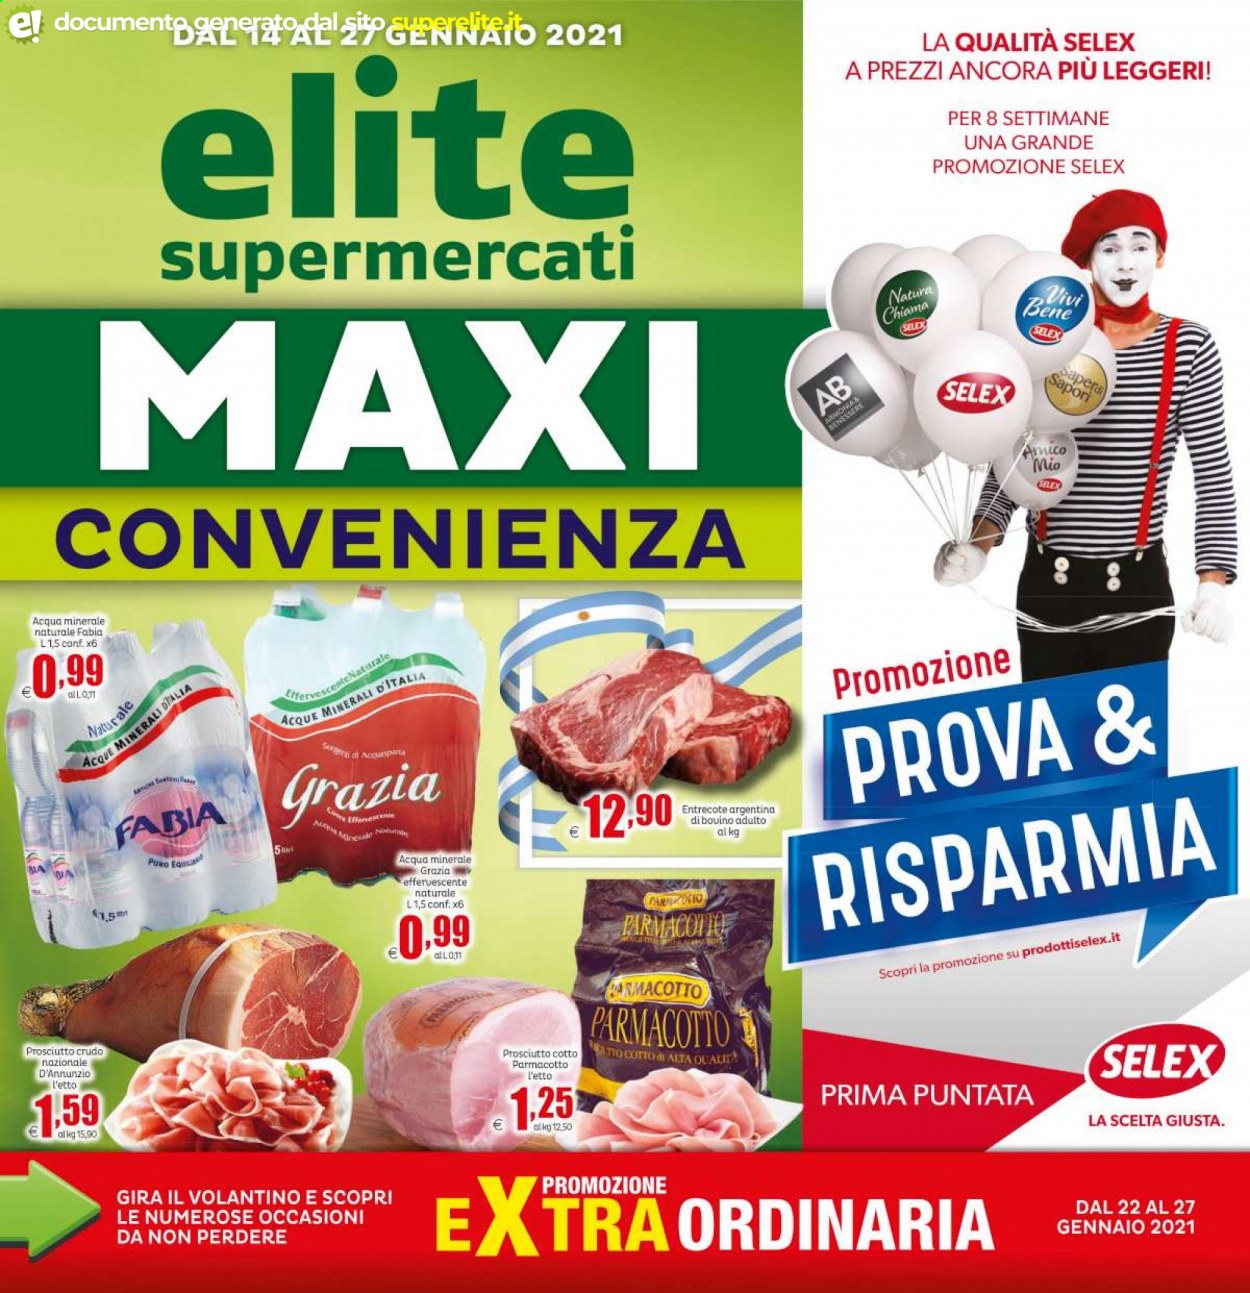 Volantino Elite Supermercati - 14.1.2021 - 27.1.2021.